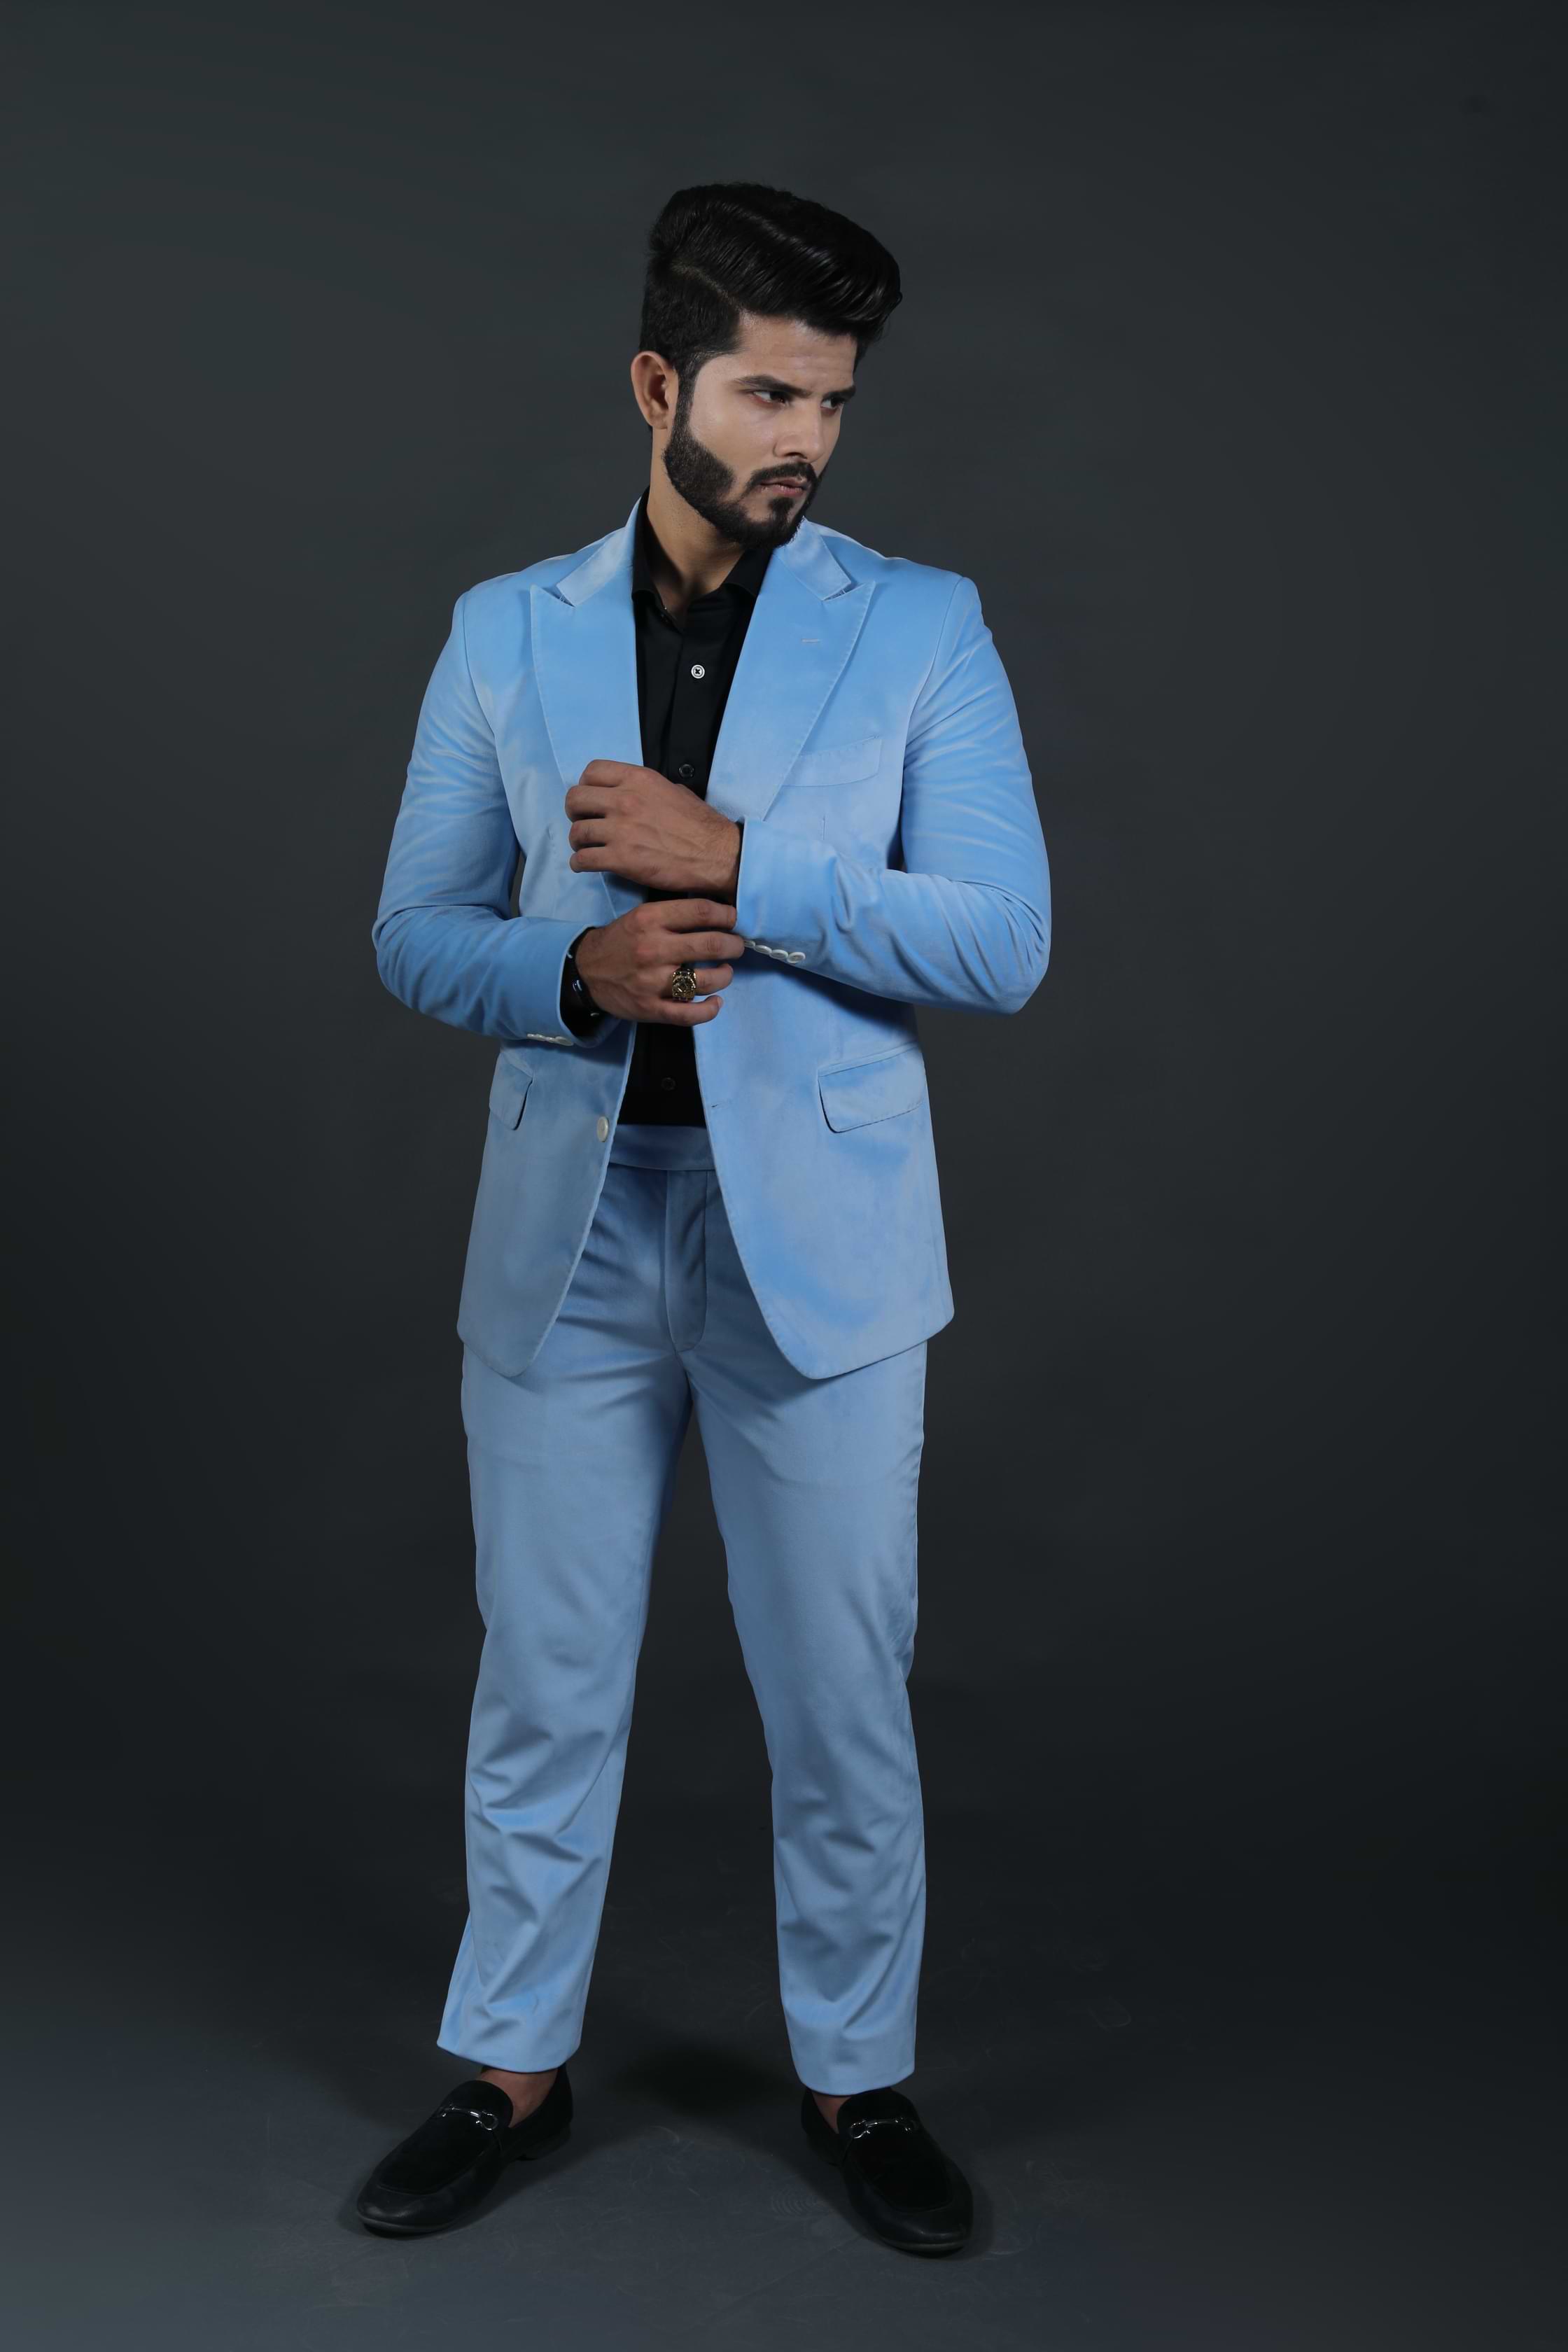 Sky blue two-piece suit